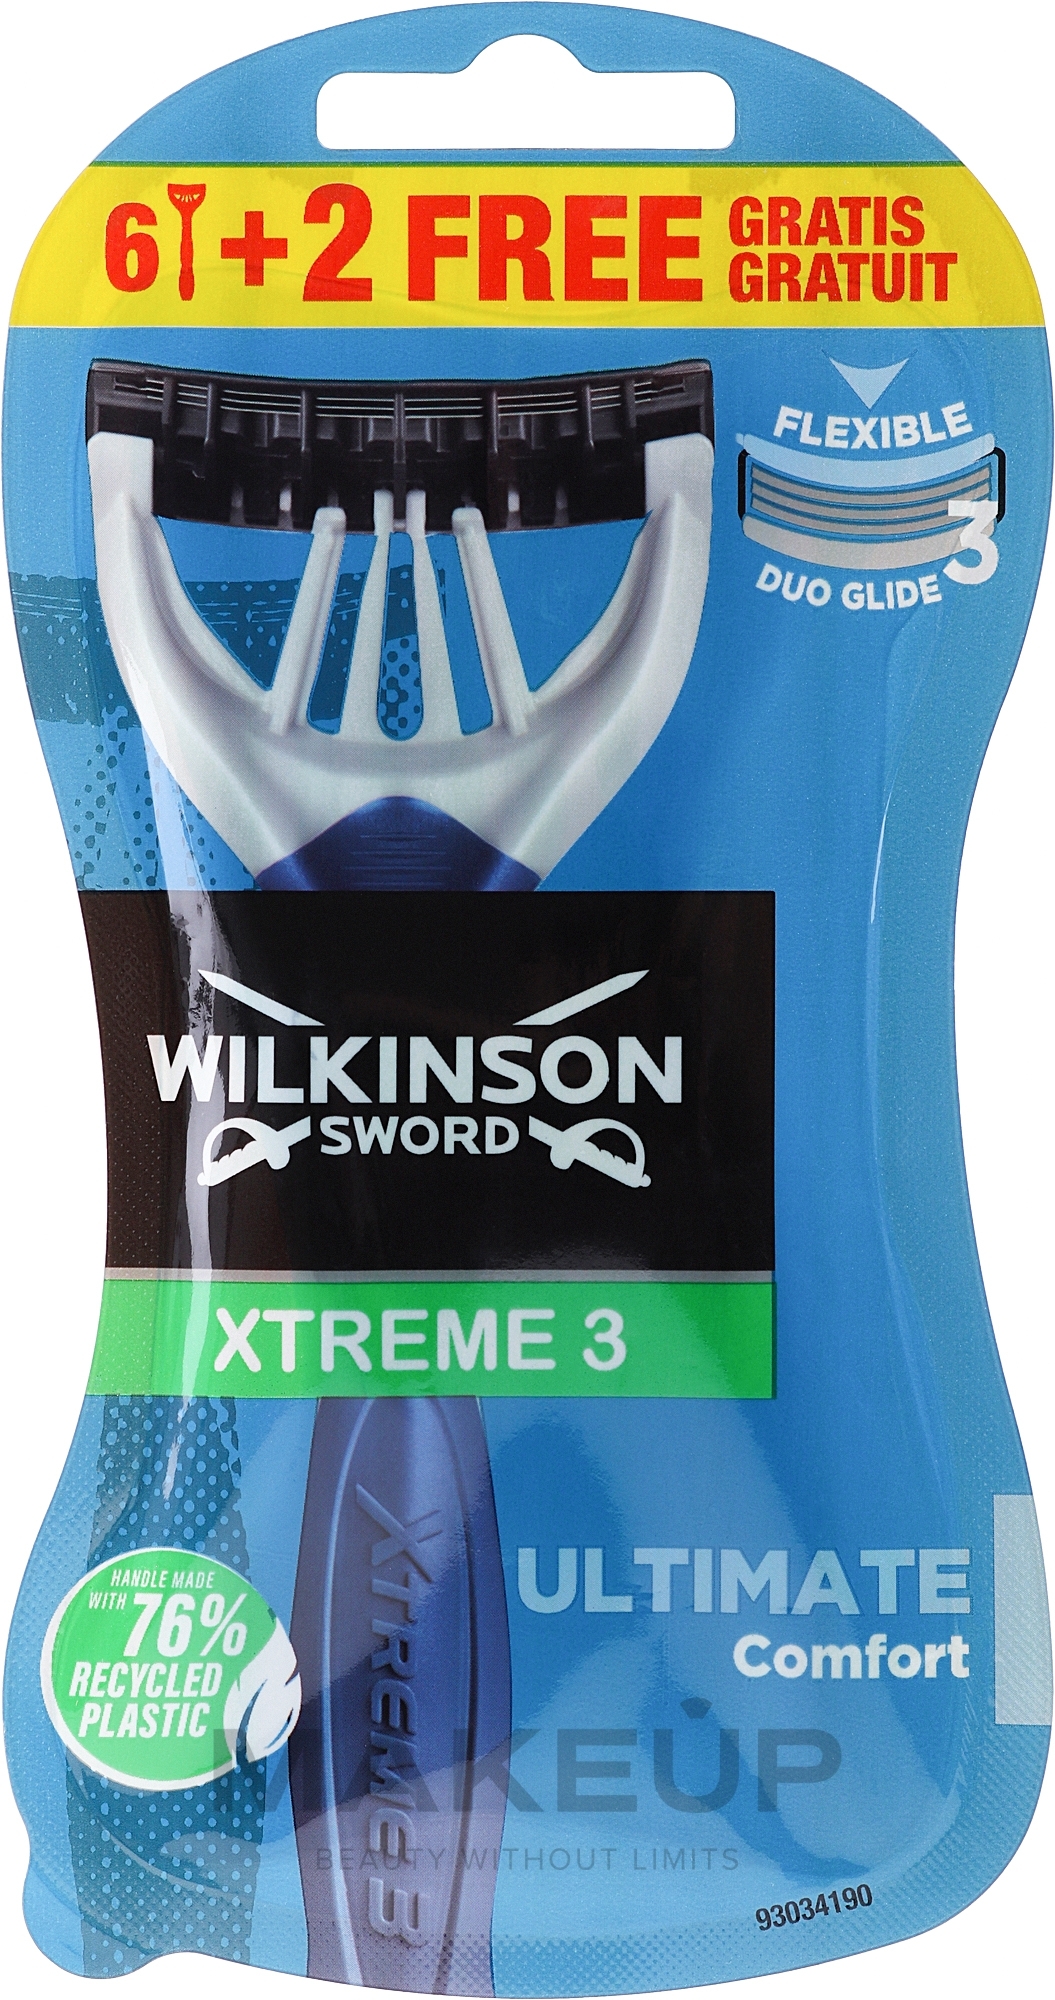 Maszynki jednorazowe, 6+2 szt. - Wilkinson Sword Xtreme 3 Ultimate Comfort — Zdjęcie 8 szt.